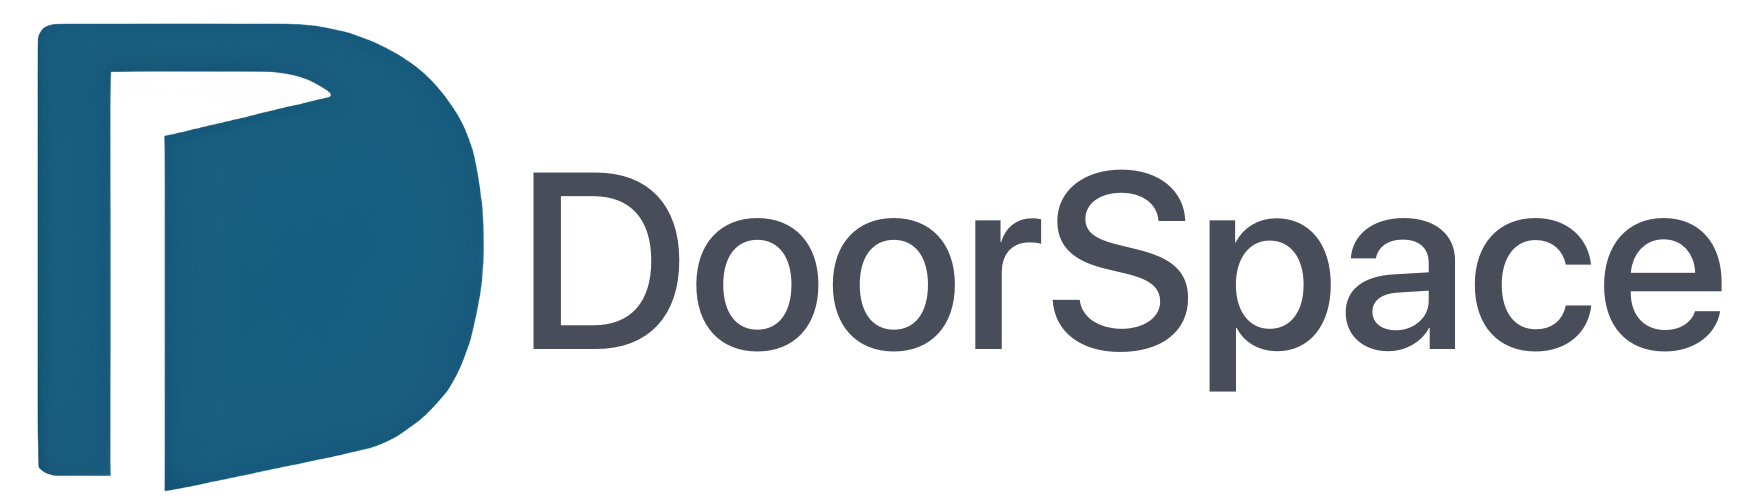 DoorSpace Inc.